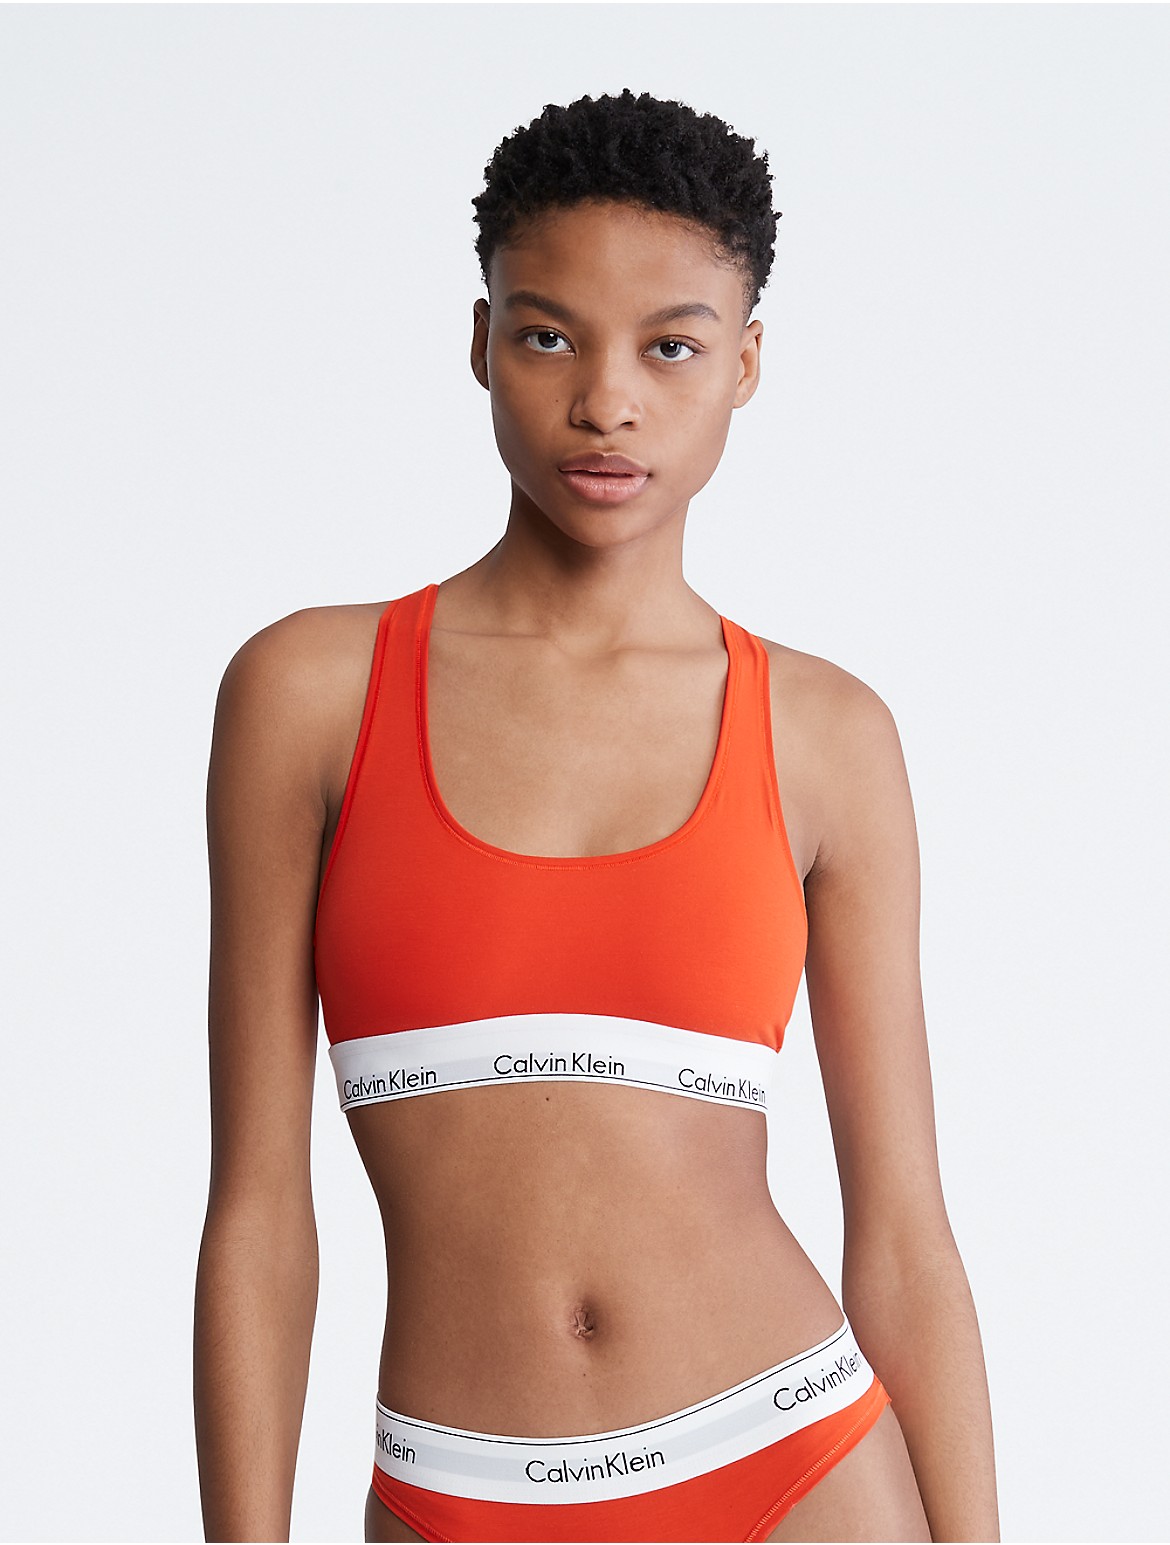 Calvin Klein Women's Modern Cotton Unlined Bralette - Orange - XS